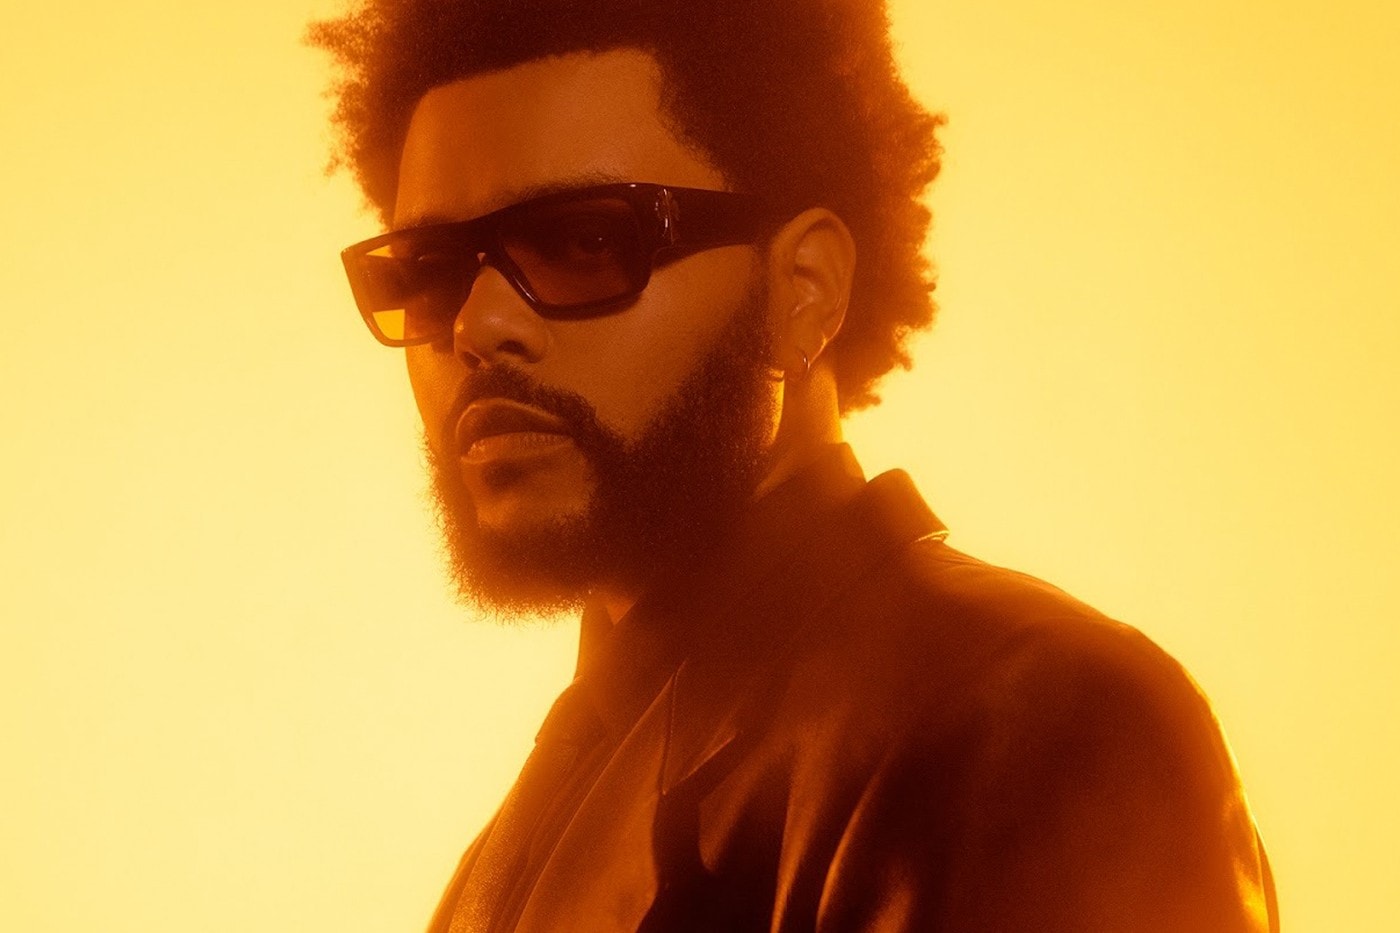 The Weeknd 發布「After Hours」巡迴演唱會最新前導預告